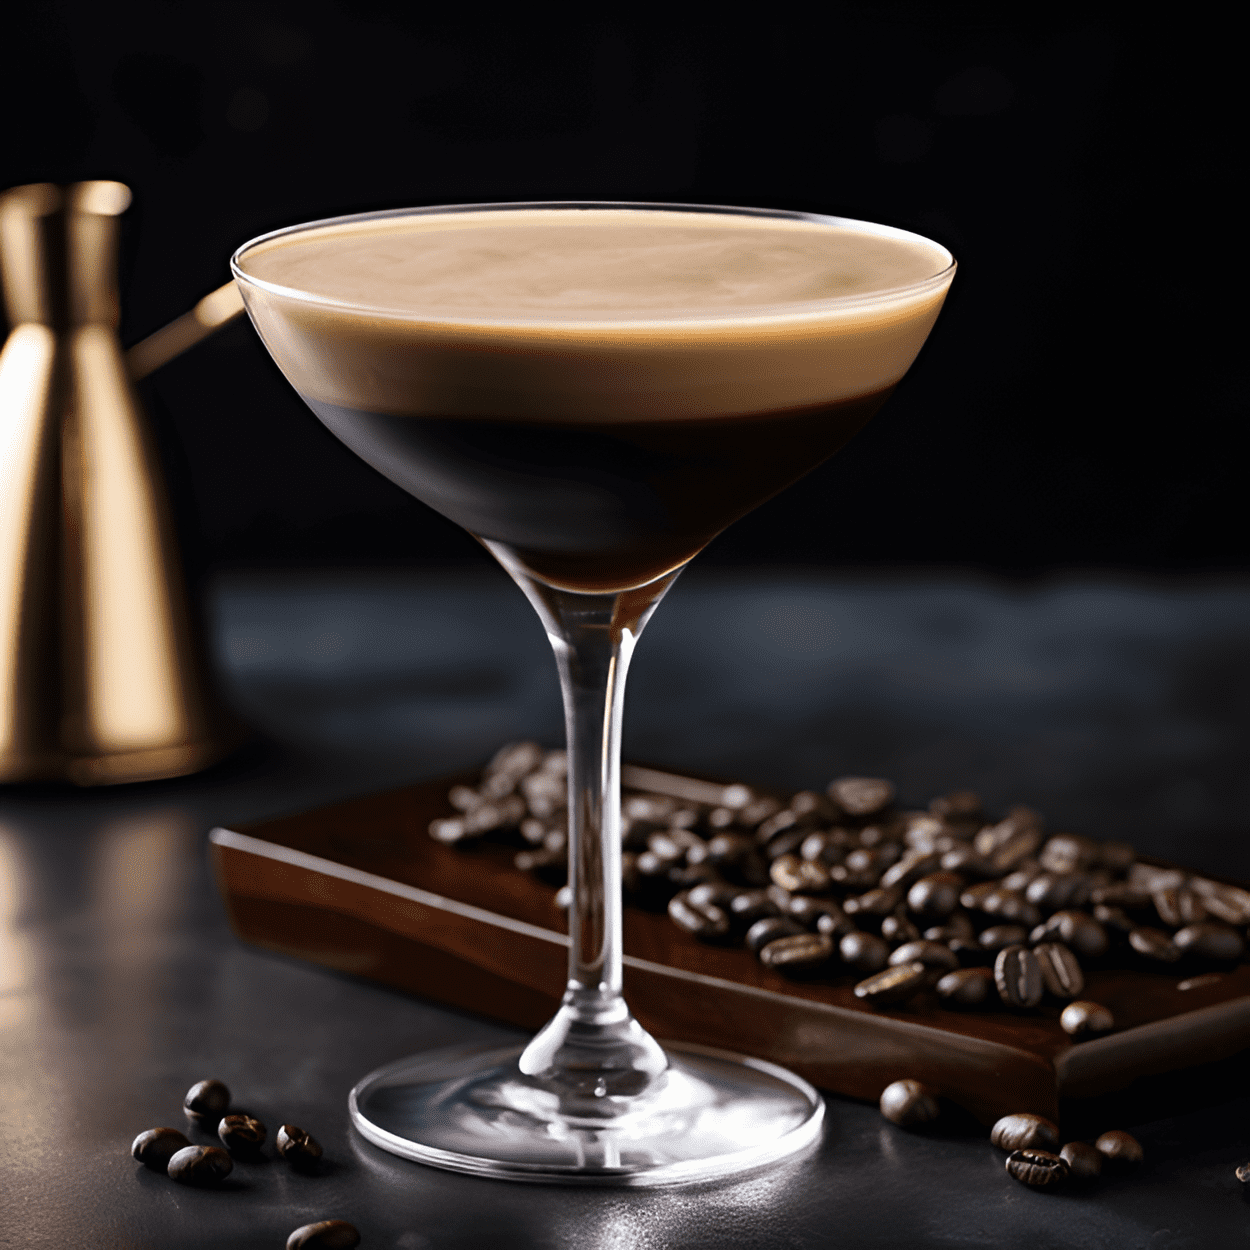 Espresso Martini Cóctel Receta - El Espresso Martini es un cóctel rico, aterciopelado y ligeramente dulce con un fuerte sabor a café y un toque de amargor. Tiene una textura cremosa y una parte superior espumosa, lo que lo convierte en una bebida lujosa e indulgente.